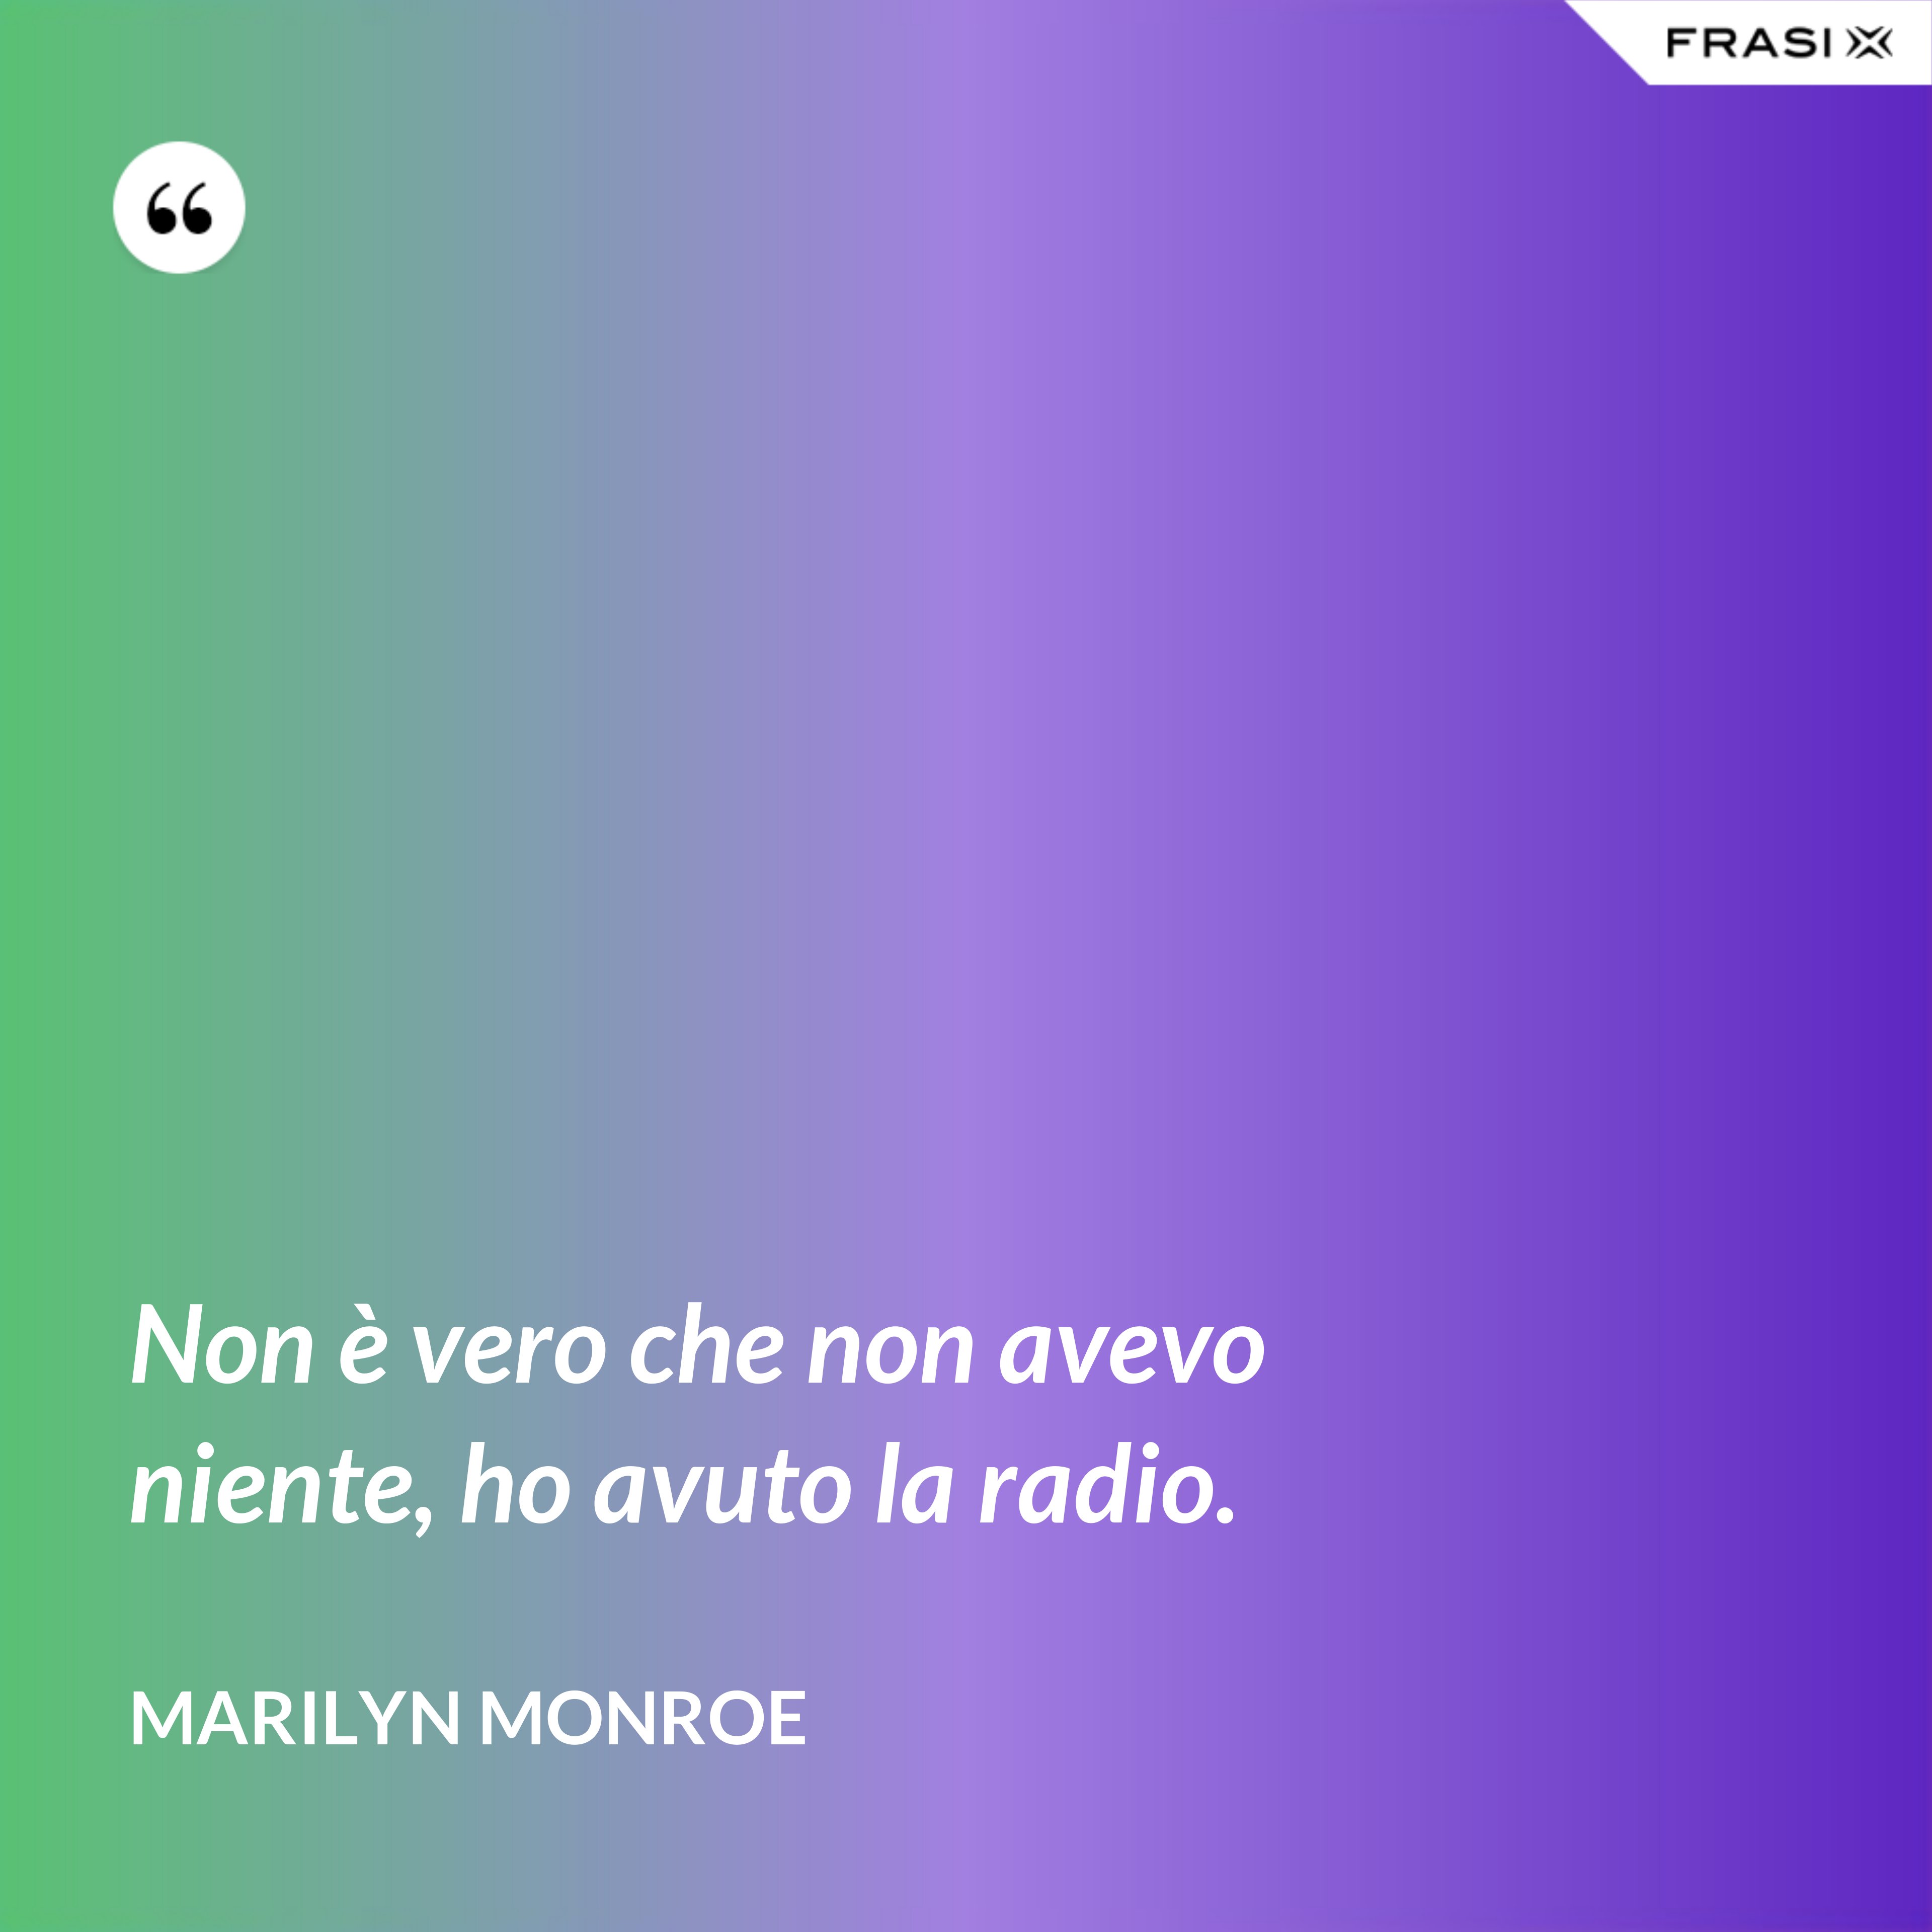 Non è vero che non avevo niente, ho avuto la radio. - Marilyn Monroe